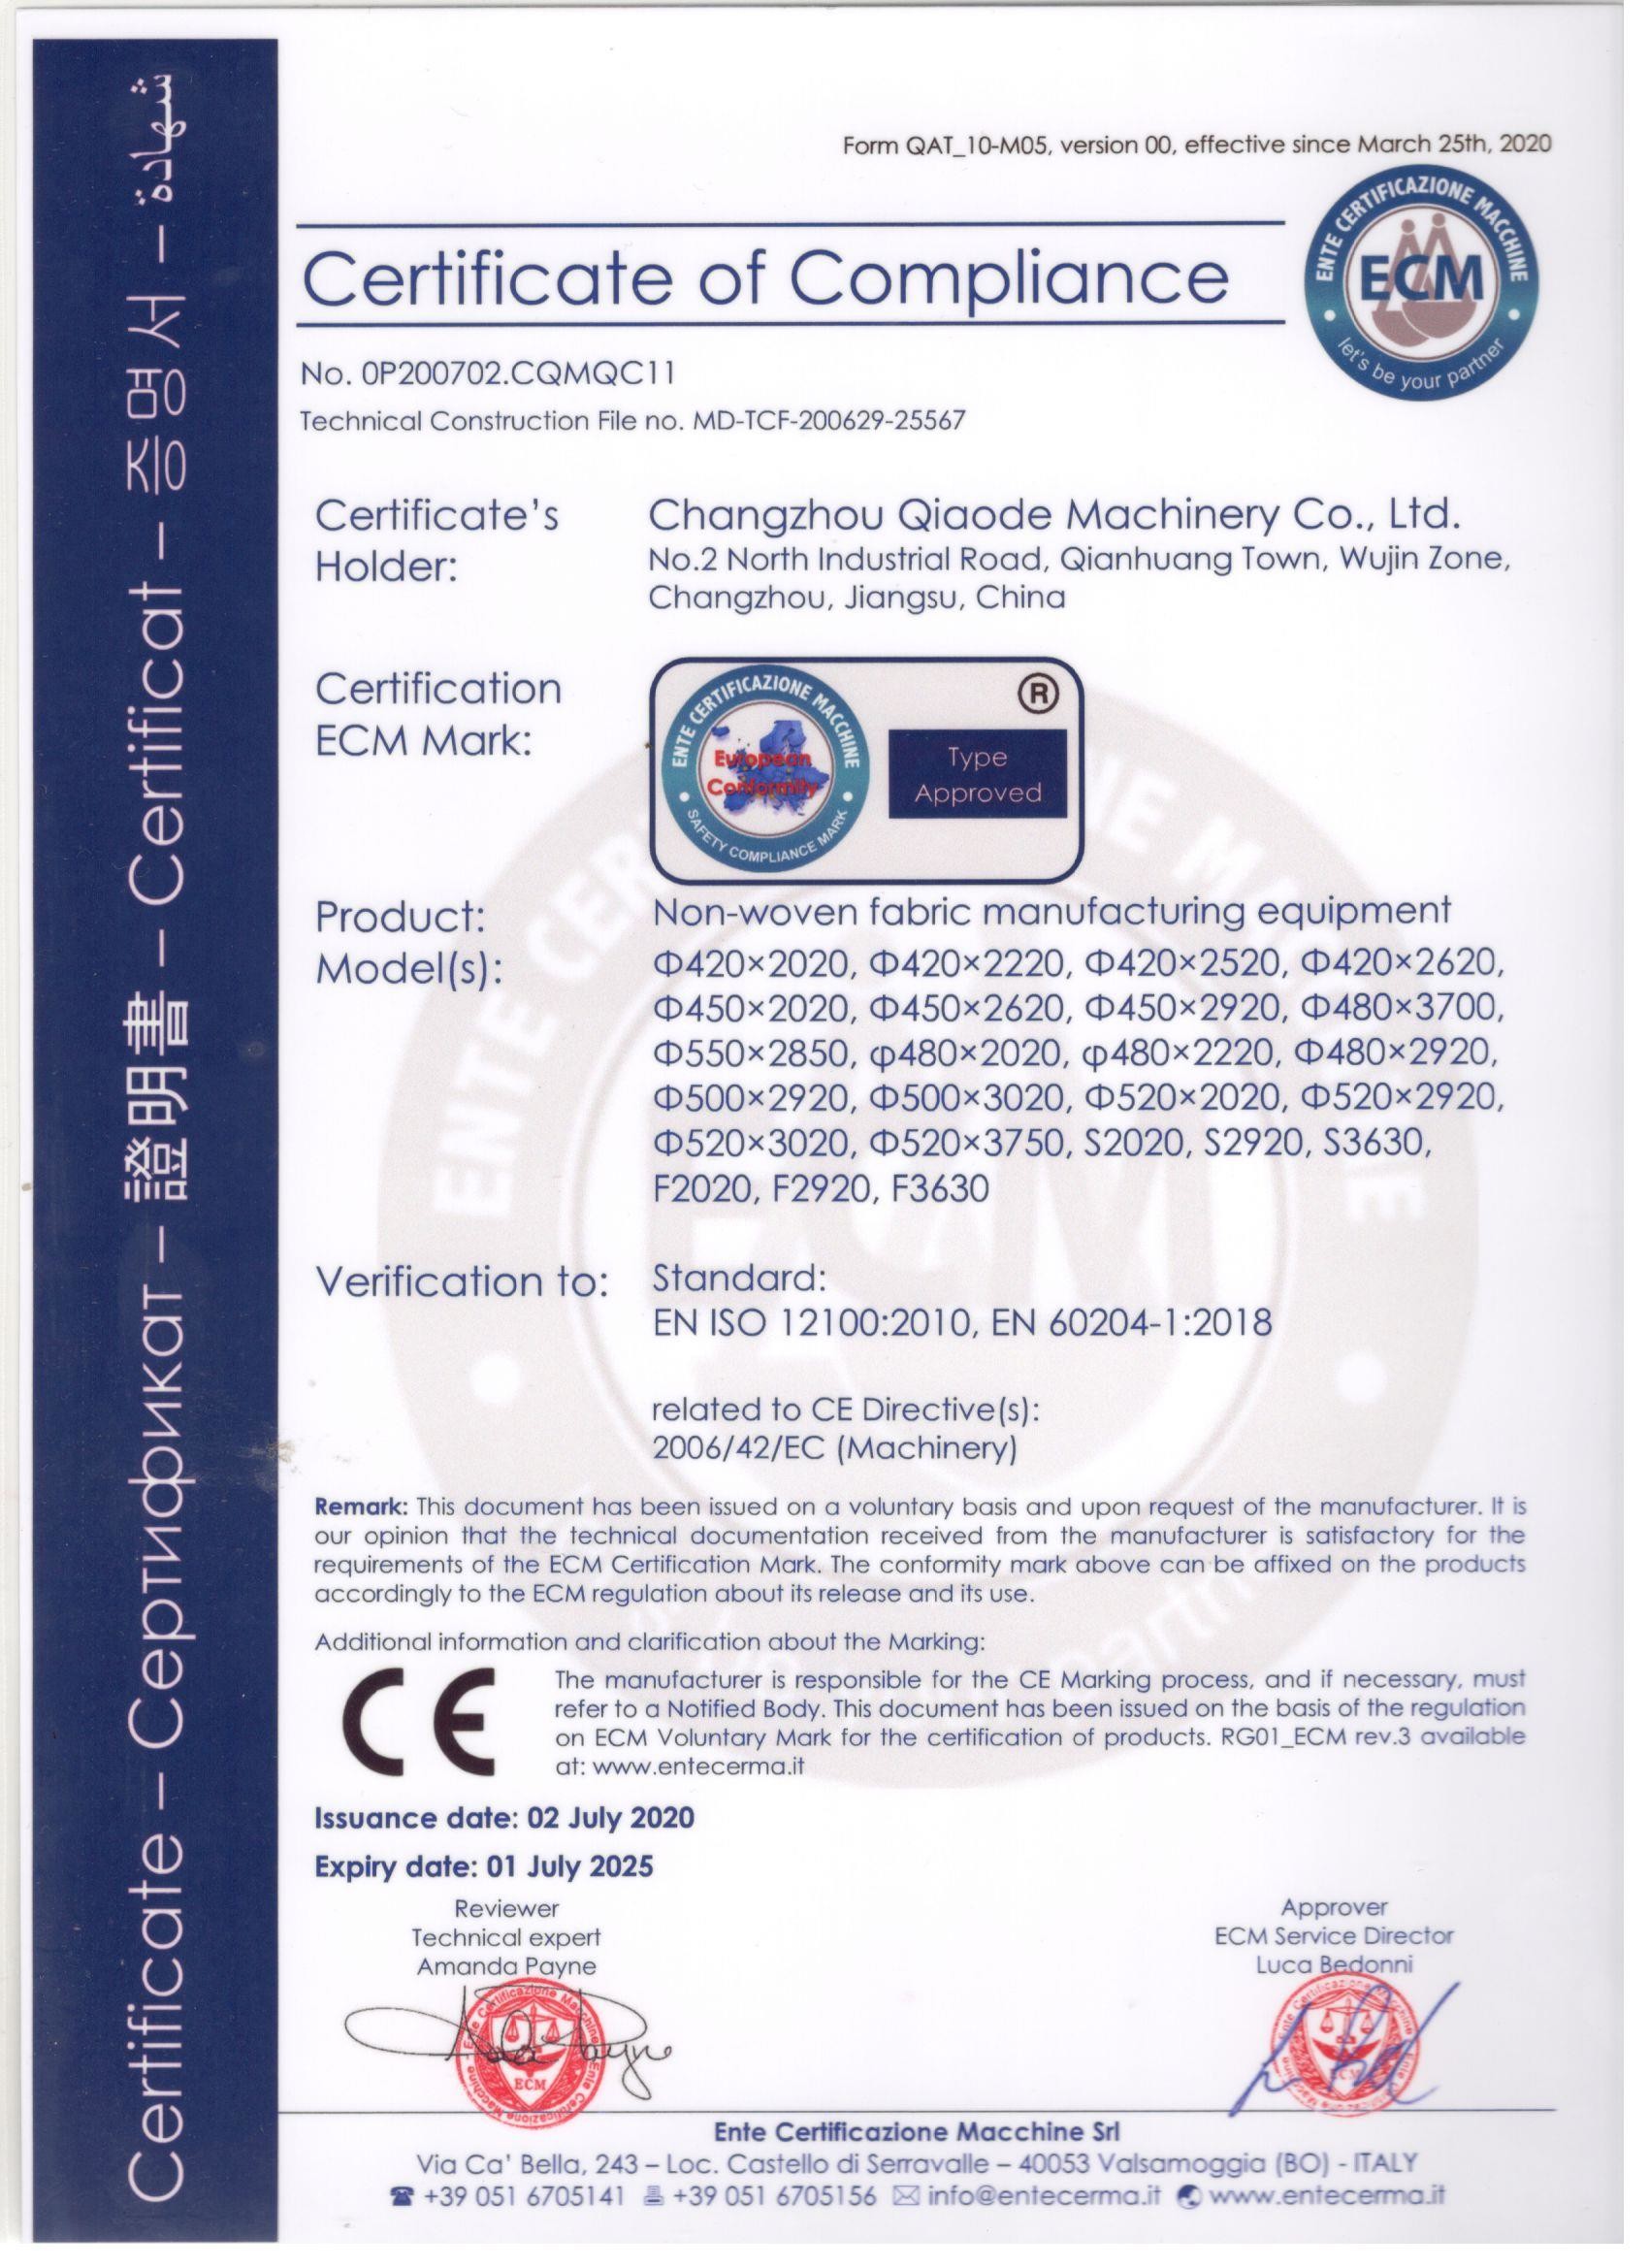 Changzhou Qiaode Machinery Co., Ltd. Certifications